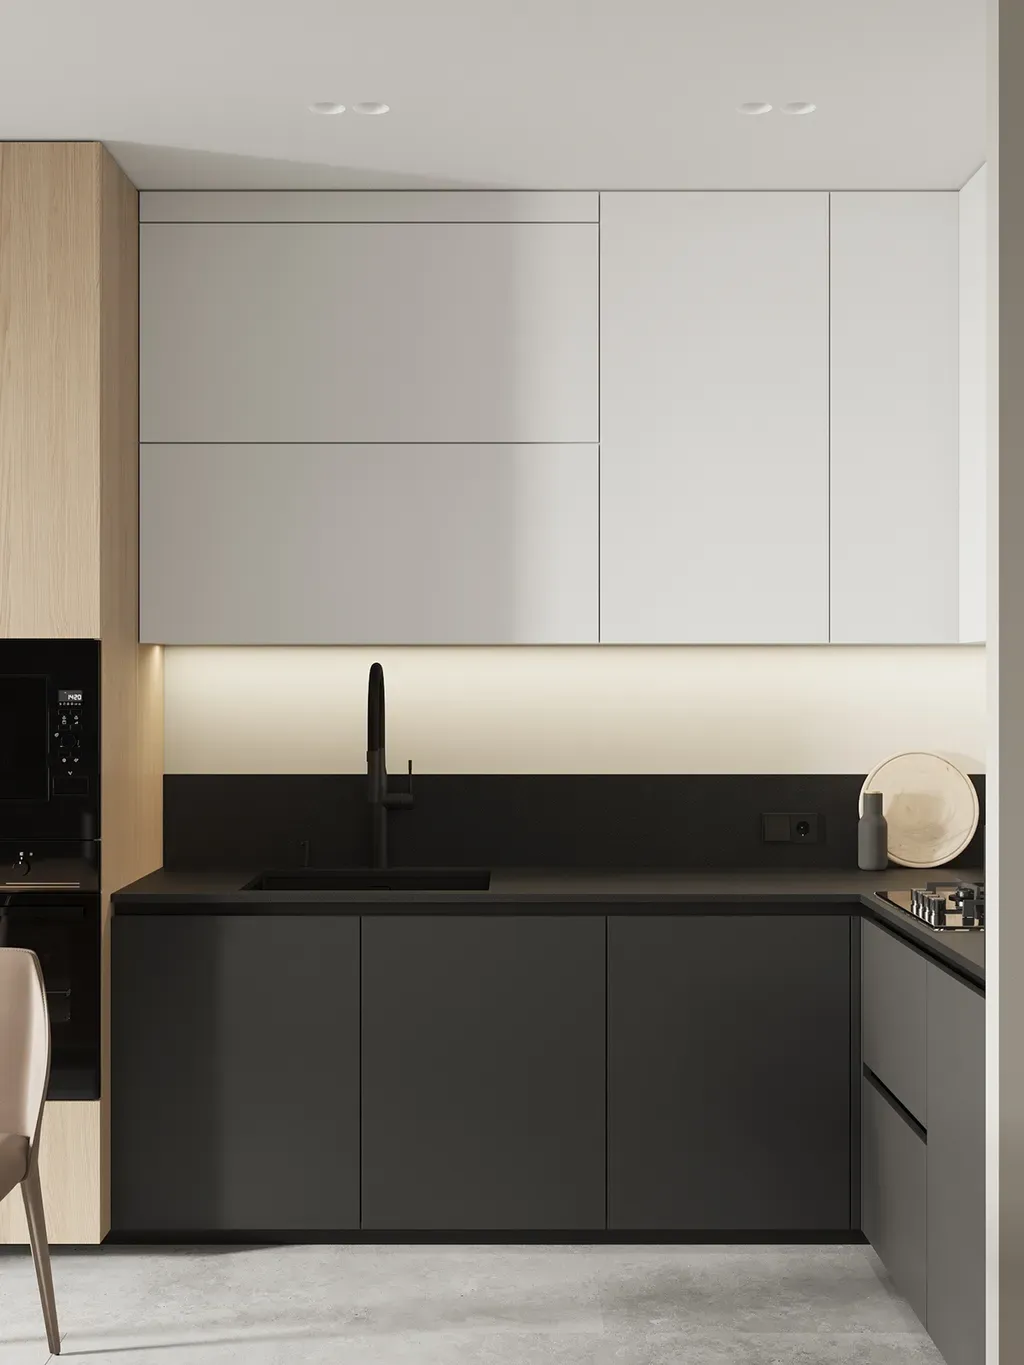 Phòng bếp - Concept thiết kế 3D căn hộ - Phong cách Minimalism số 1  | Space T